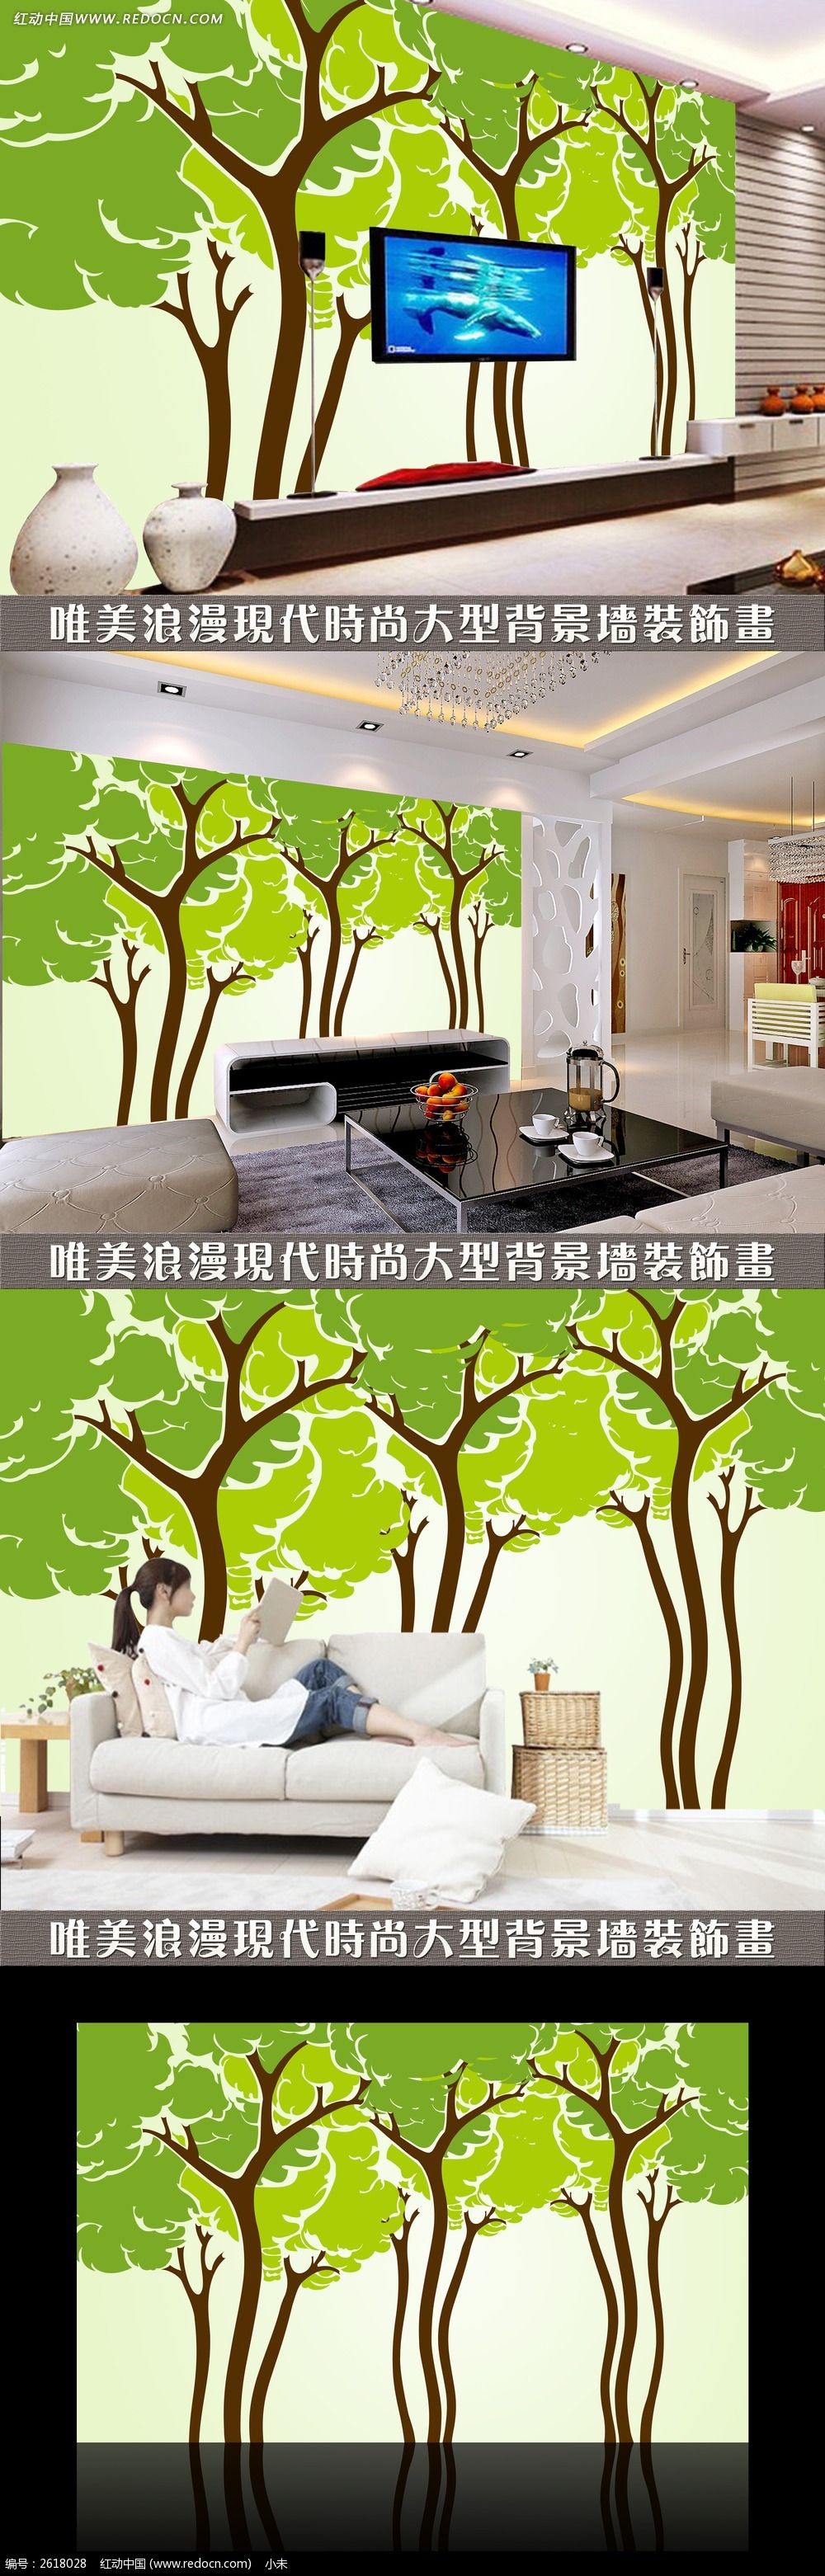 室内大树装饰素材图案设计